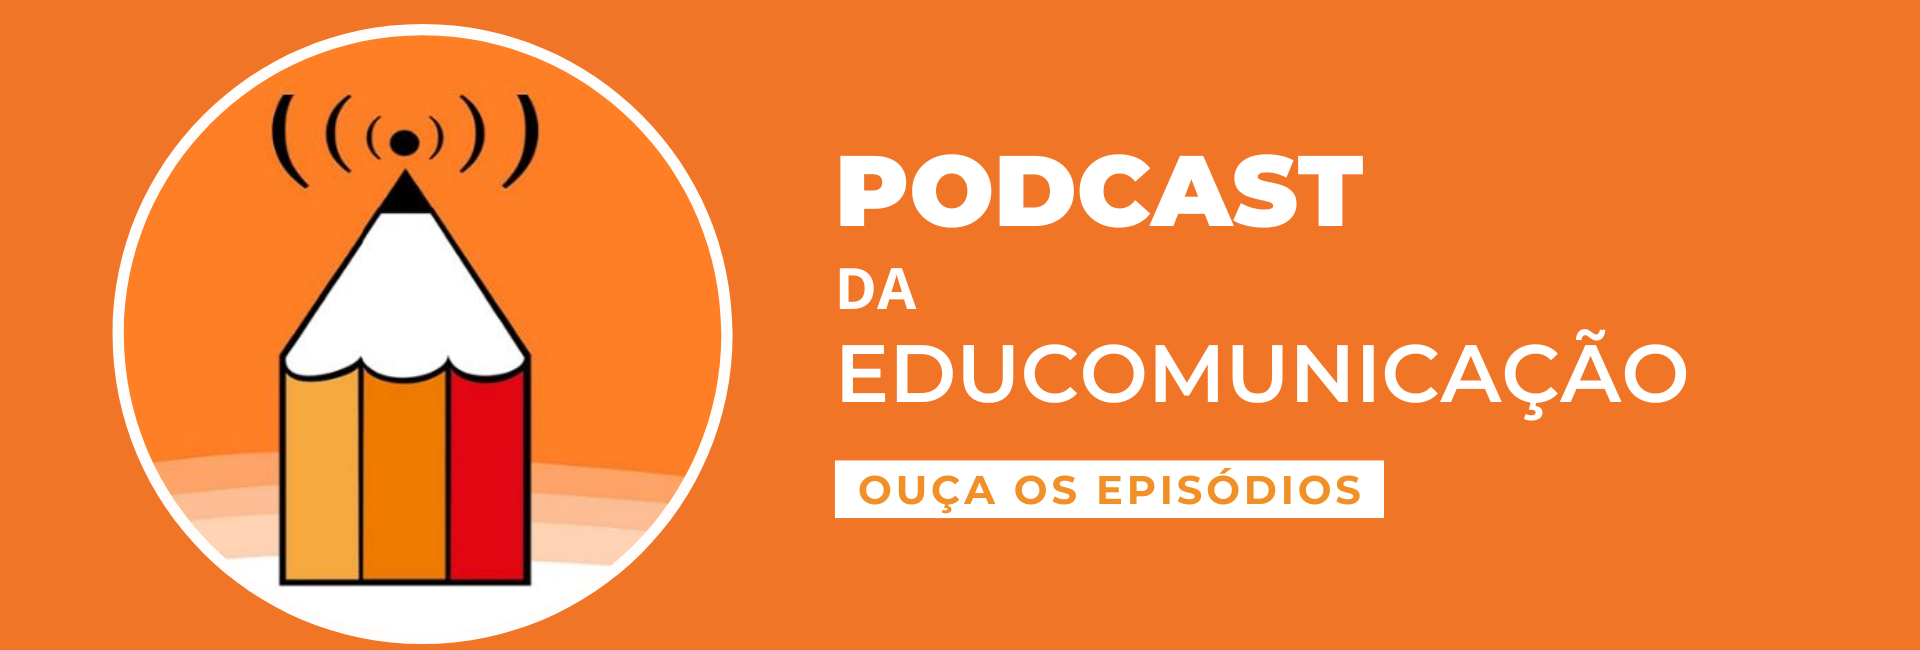 banner com lapis e fundo laranja com a informação Podcast da Educomunicação